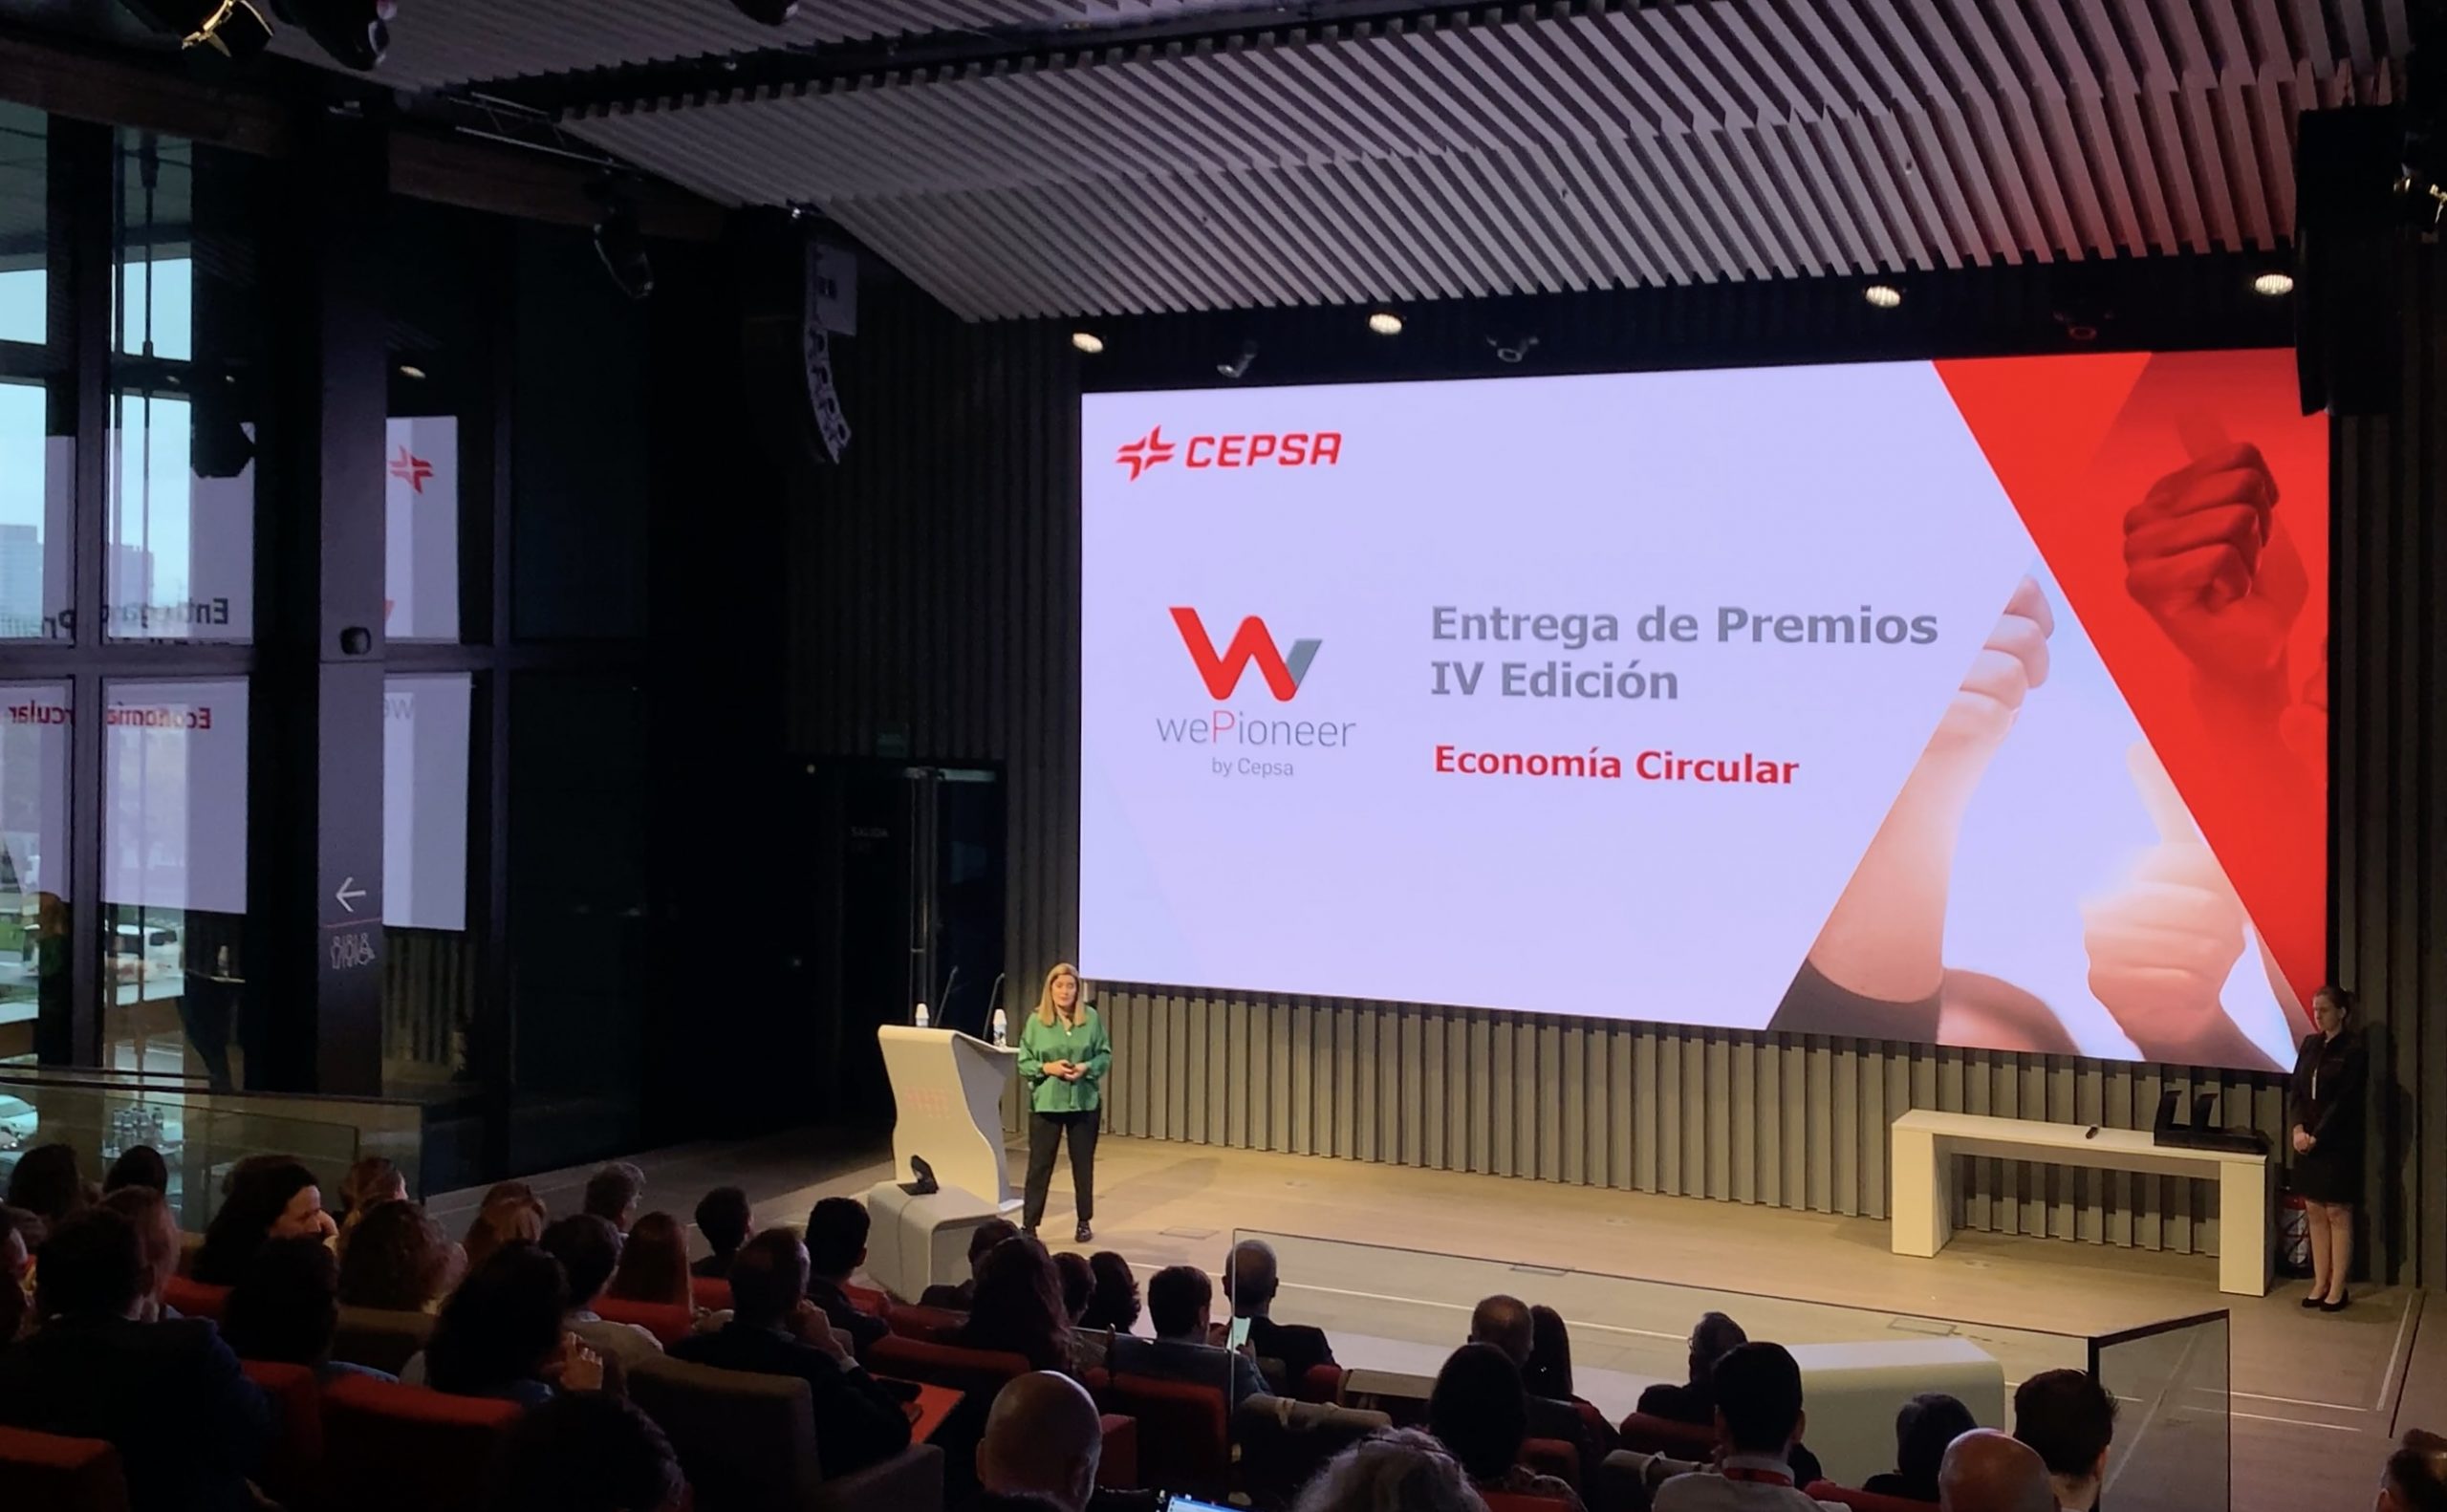 Premios CEPSA WeePioneer 2022